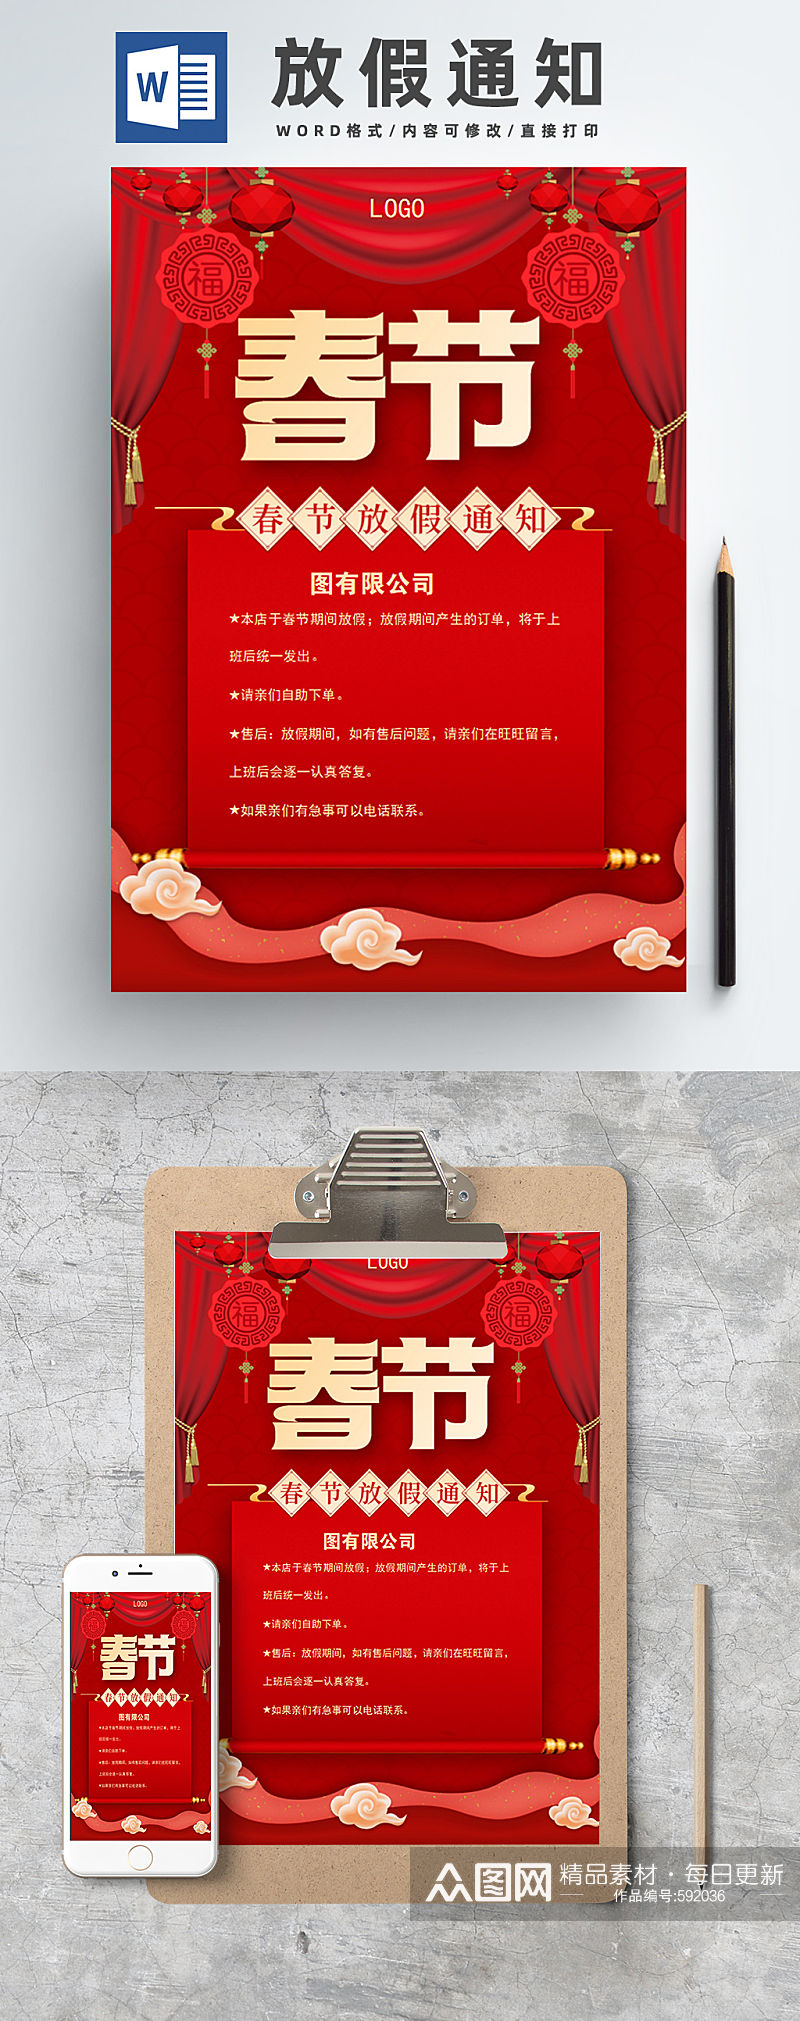 喜庆春节放假通知海报模板素材